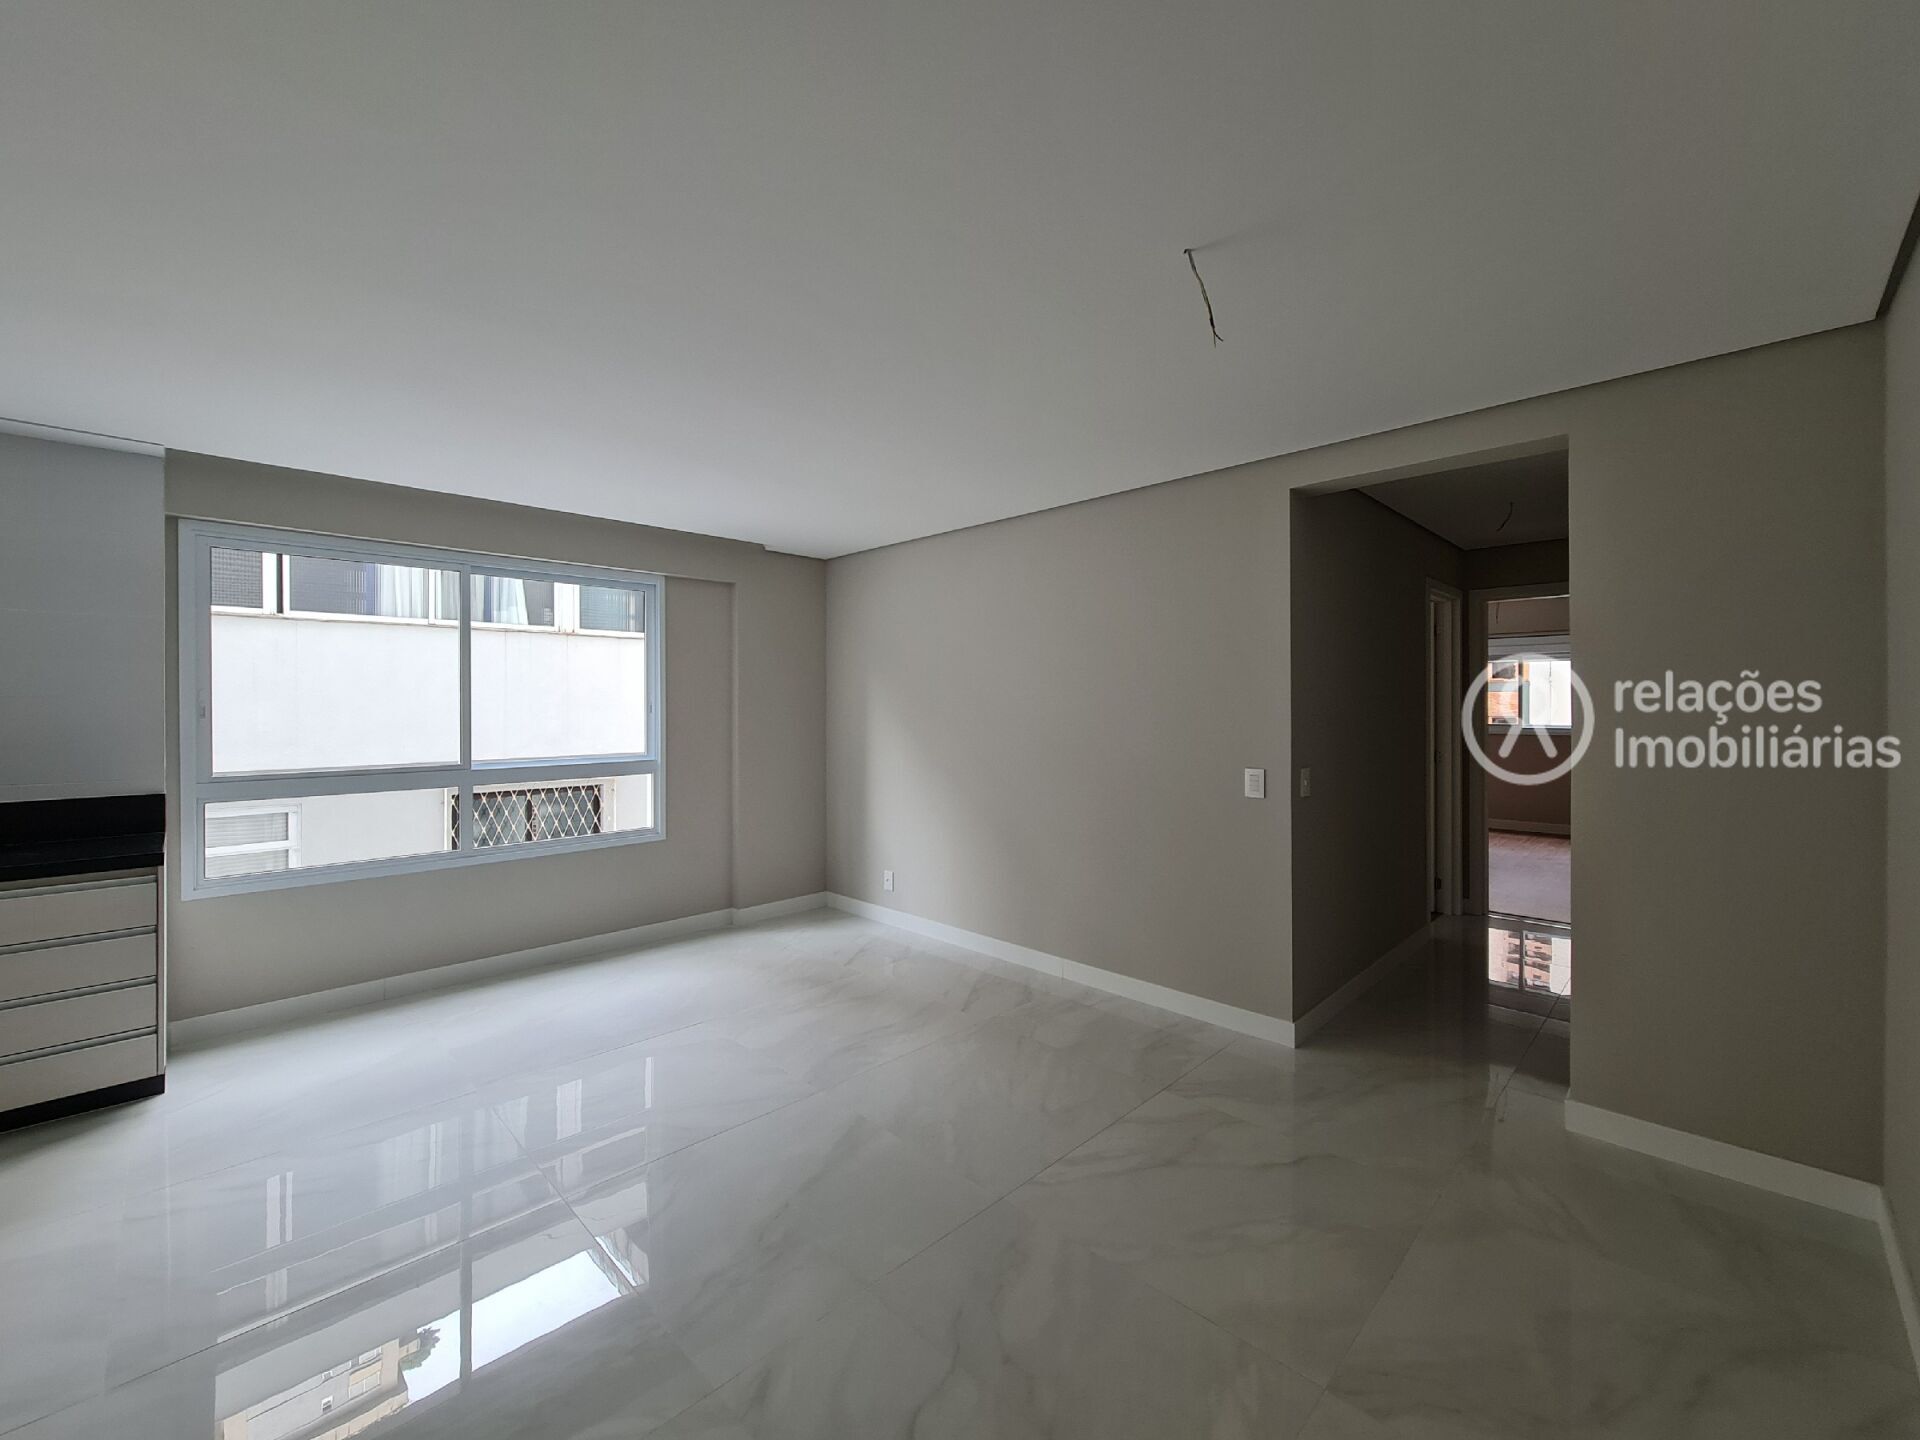 Apartamento, 3 quartos, 116 m² - Foto 2